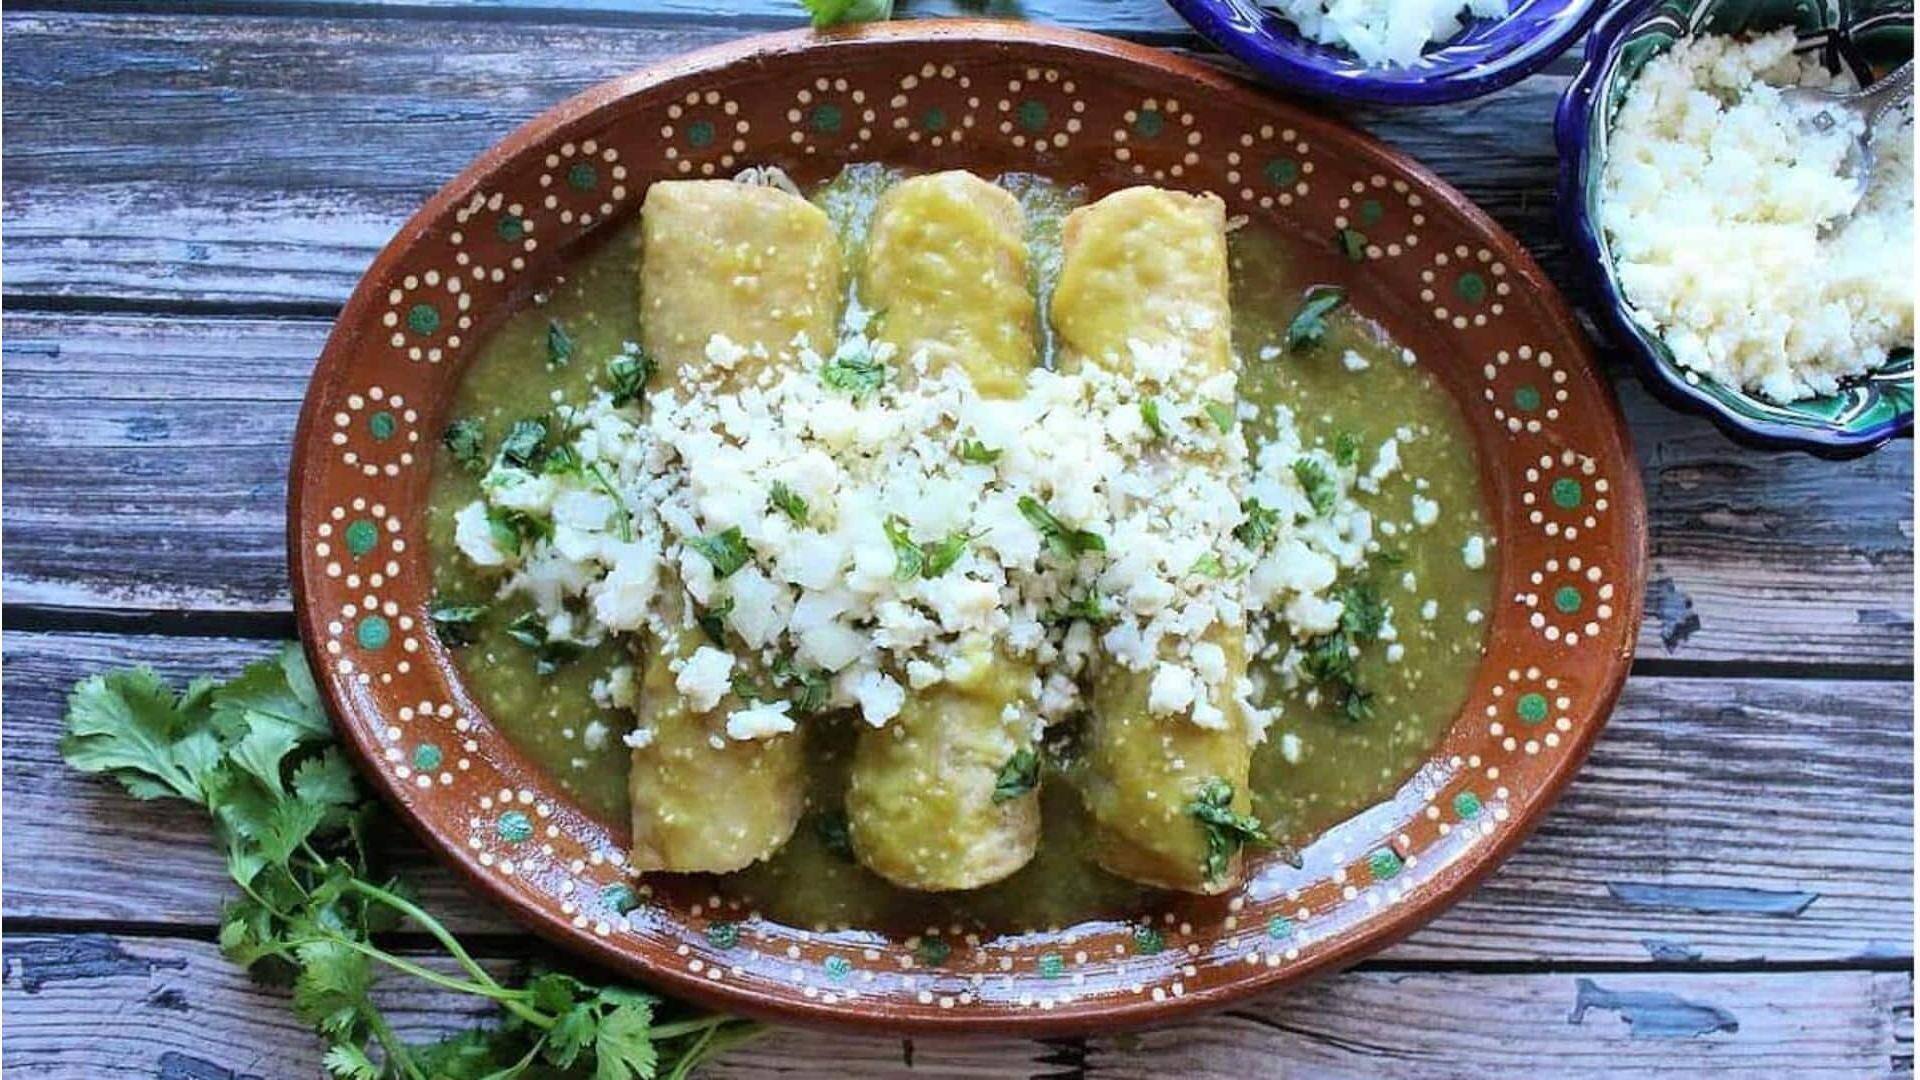 Resep enchiladas verdes dari Meksiko ini akan membuat tamu Anda terkesan